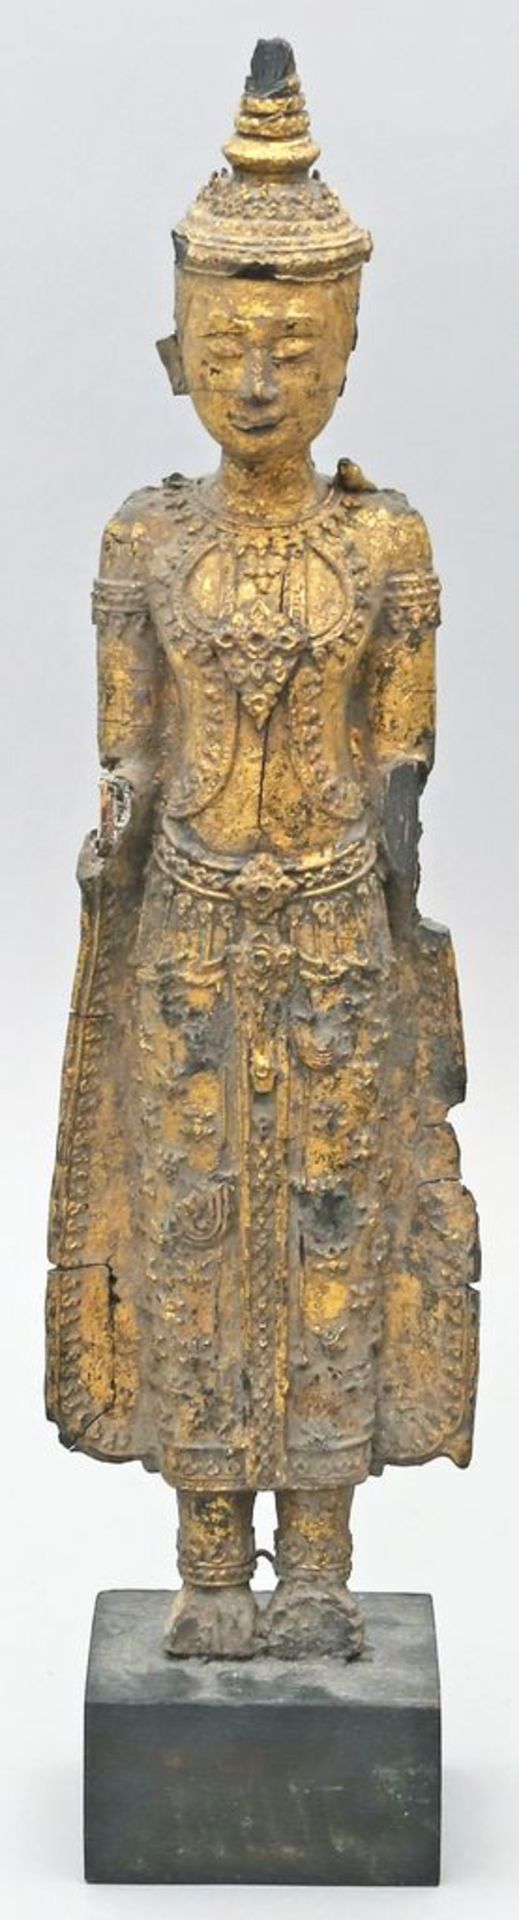 Stehender Buddha. Holz, geschnitzt und vergoldet. Besch. mit Fehlteilen. Indonesien od